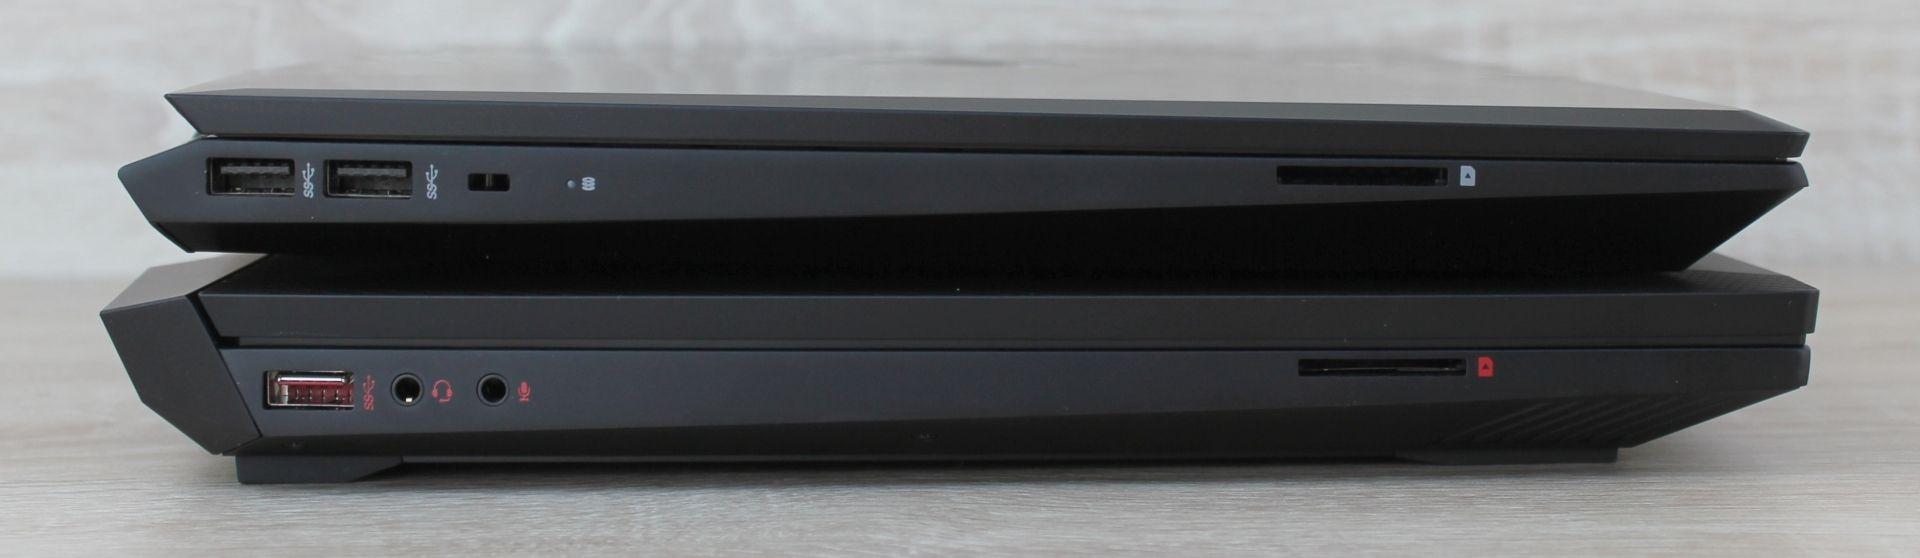 Na ľavej strane má Pavilion Gaming dva USB porty, ako aj otvor pre bezpečnostný zámok. Omen svoju ľavú stranu vyradil pre duo zvukových portov a jeden USB. (Navrchu je Pavilion Gaming 15).